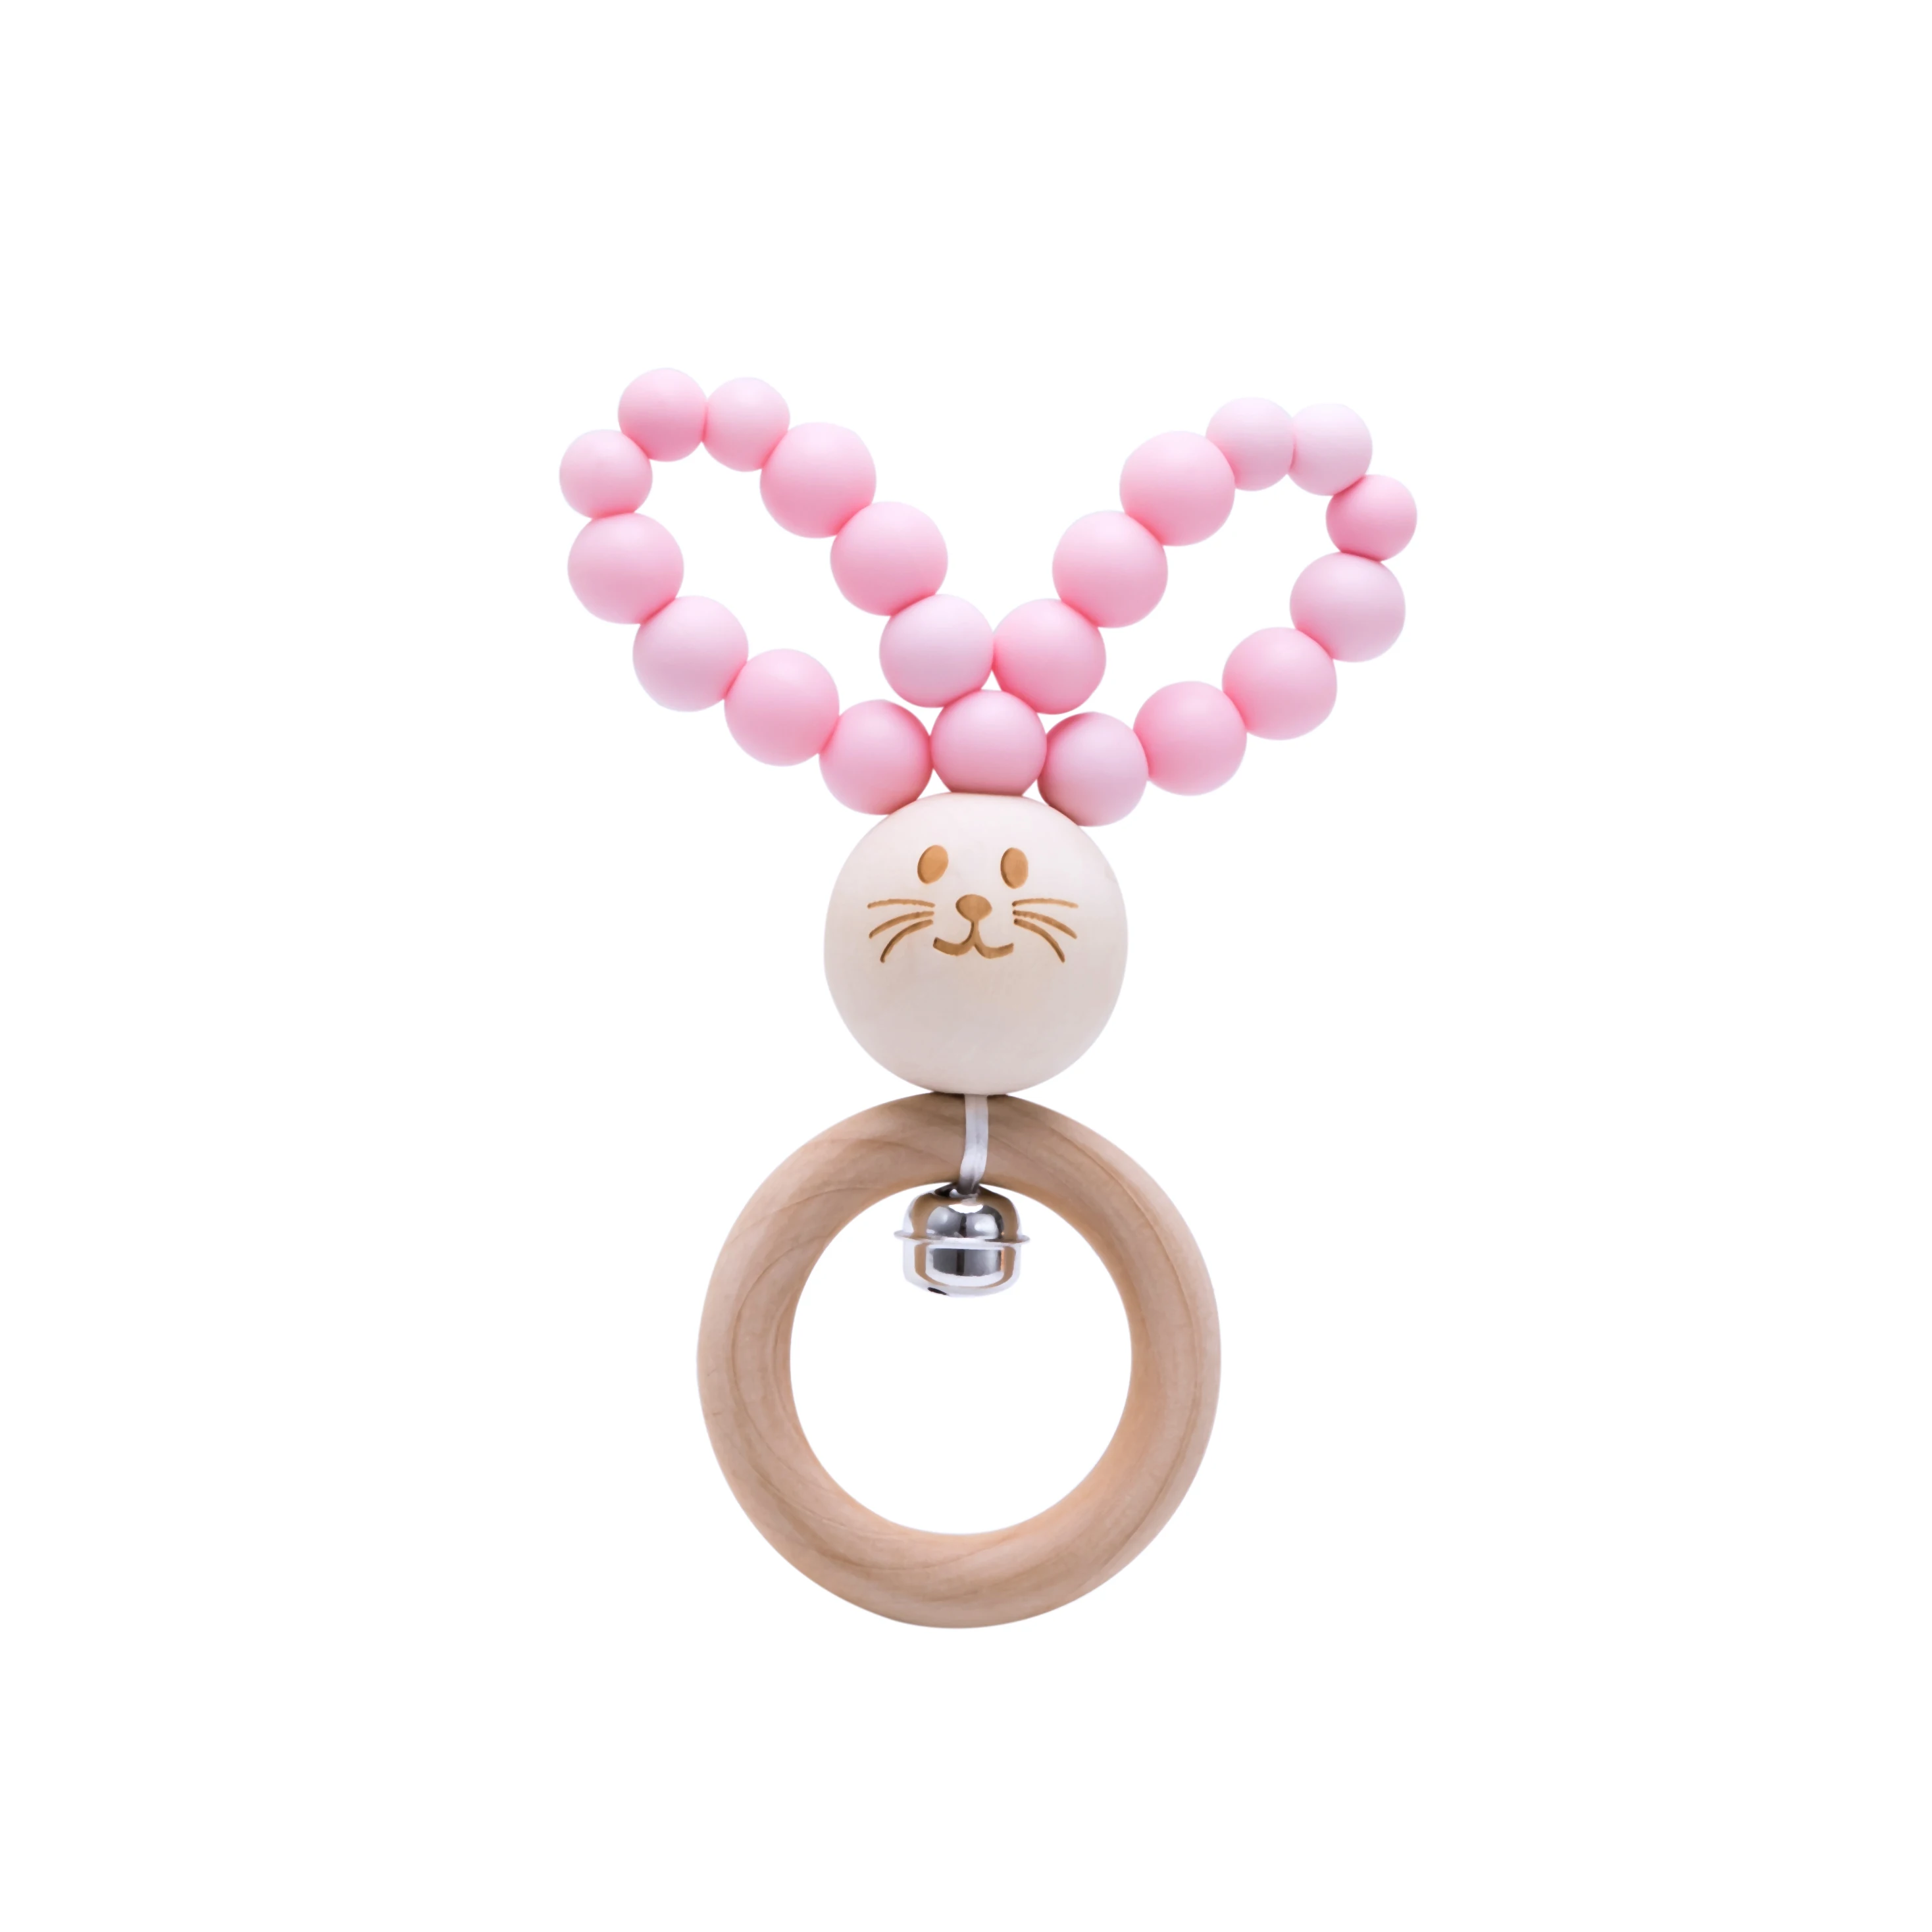 Bopoobo 1 шт. детские погремушки для малышей с рисунком Банни детская музыкальная игрушка для новорожденных Силиконовые бусинки-колокольчики еда без бисфенола-а Класс для ухода за младенцем, производство - Цвет: Candy Pink Bunny